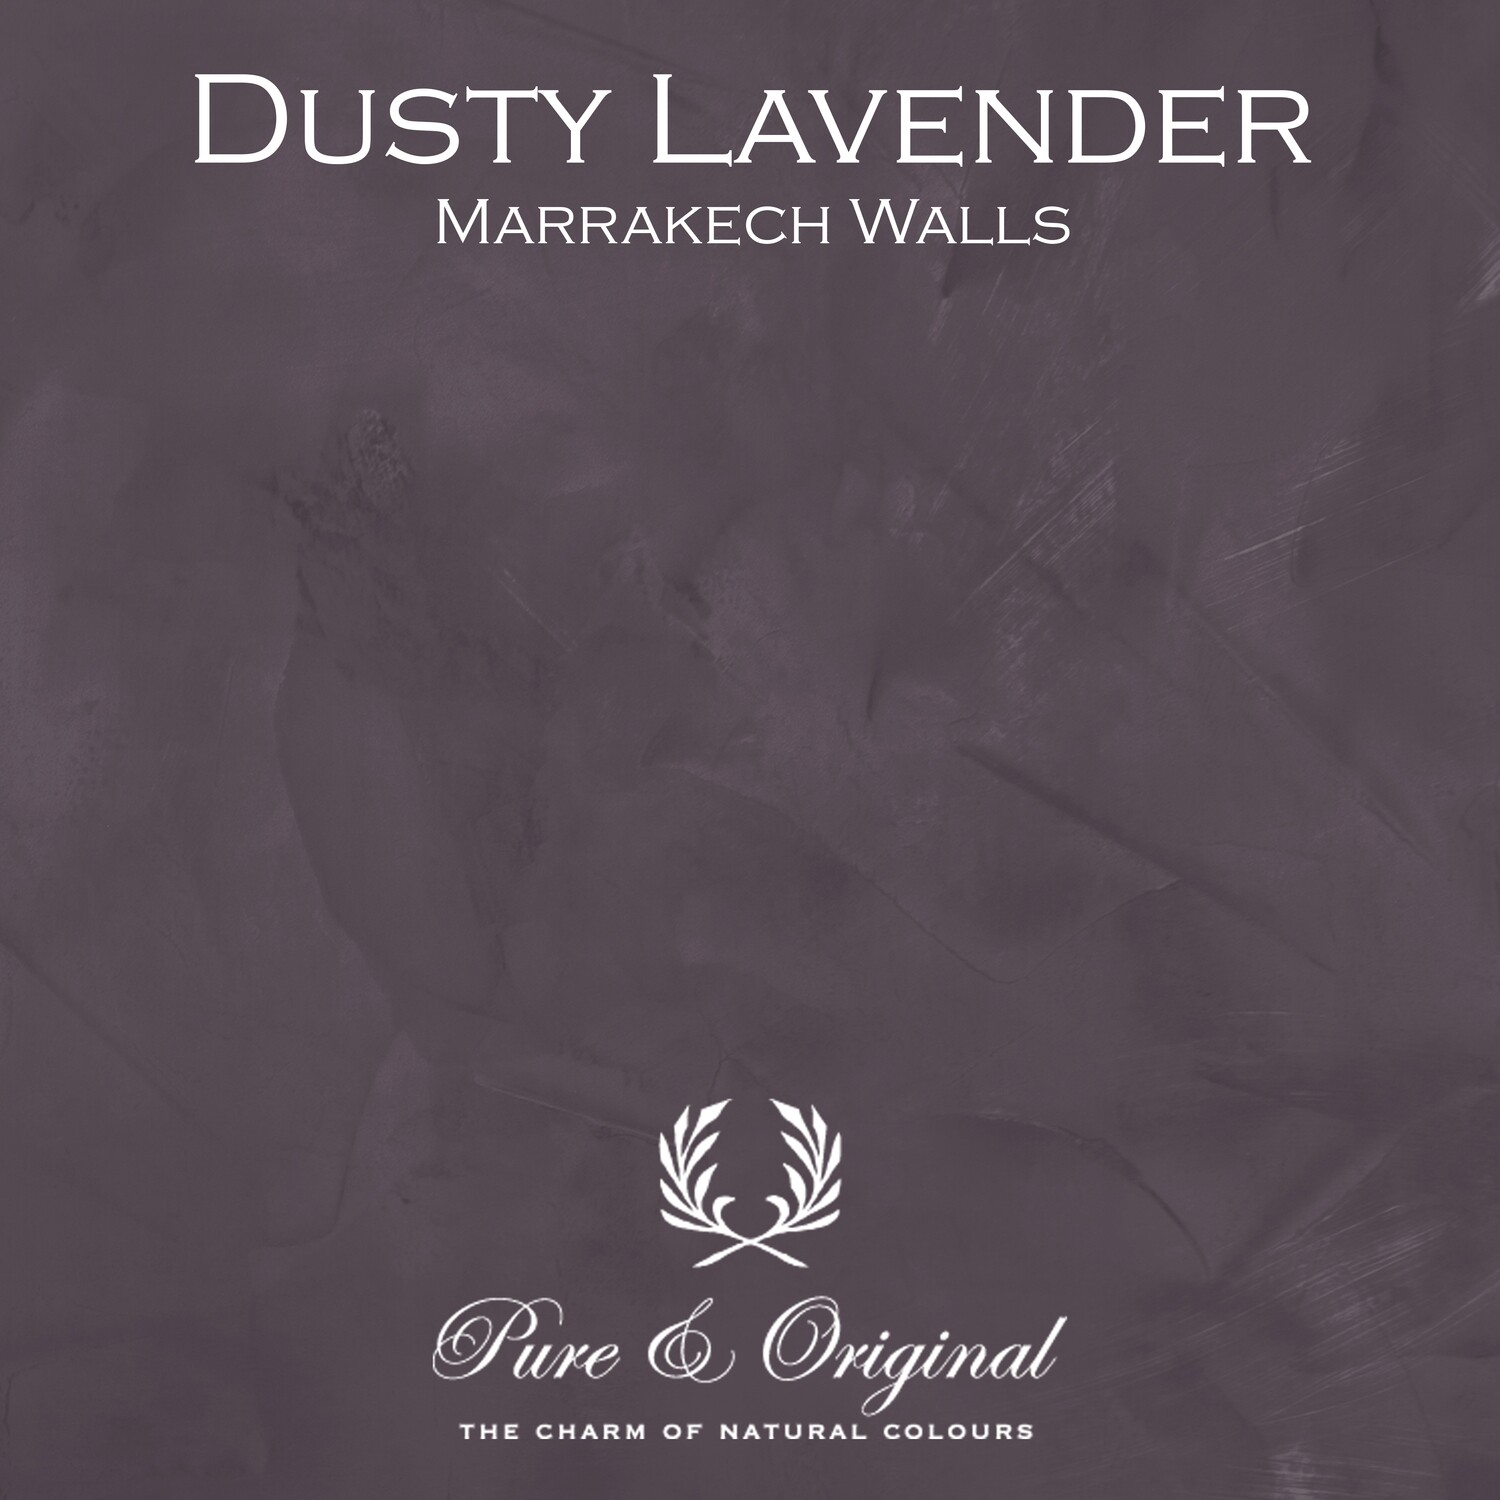 Dusty Lavender Marrakech